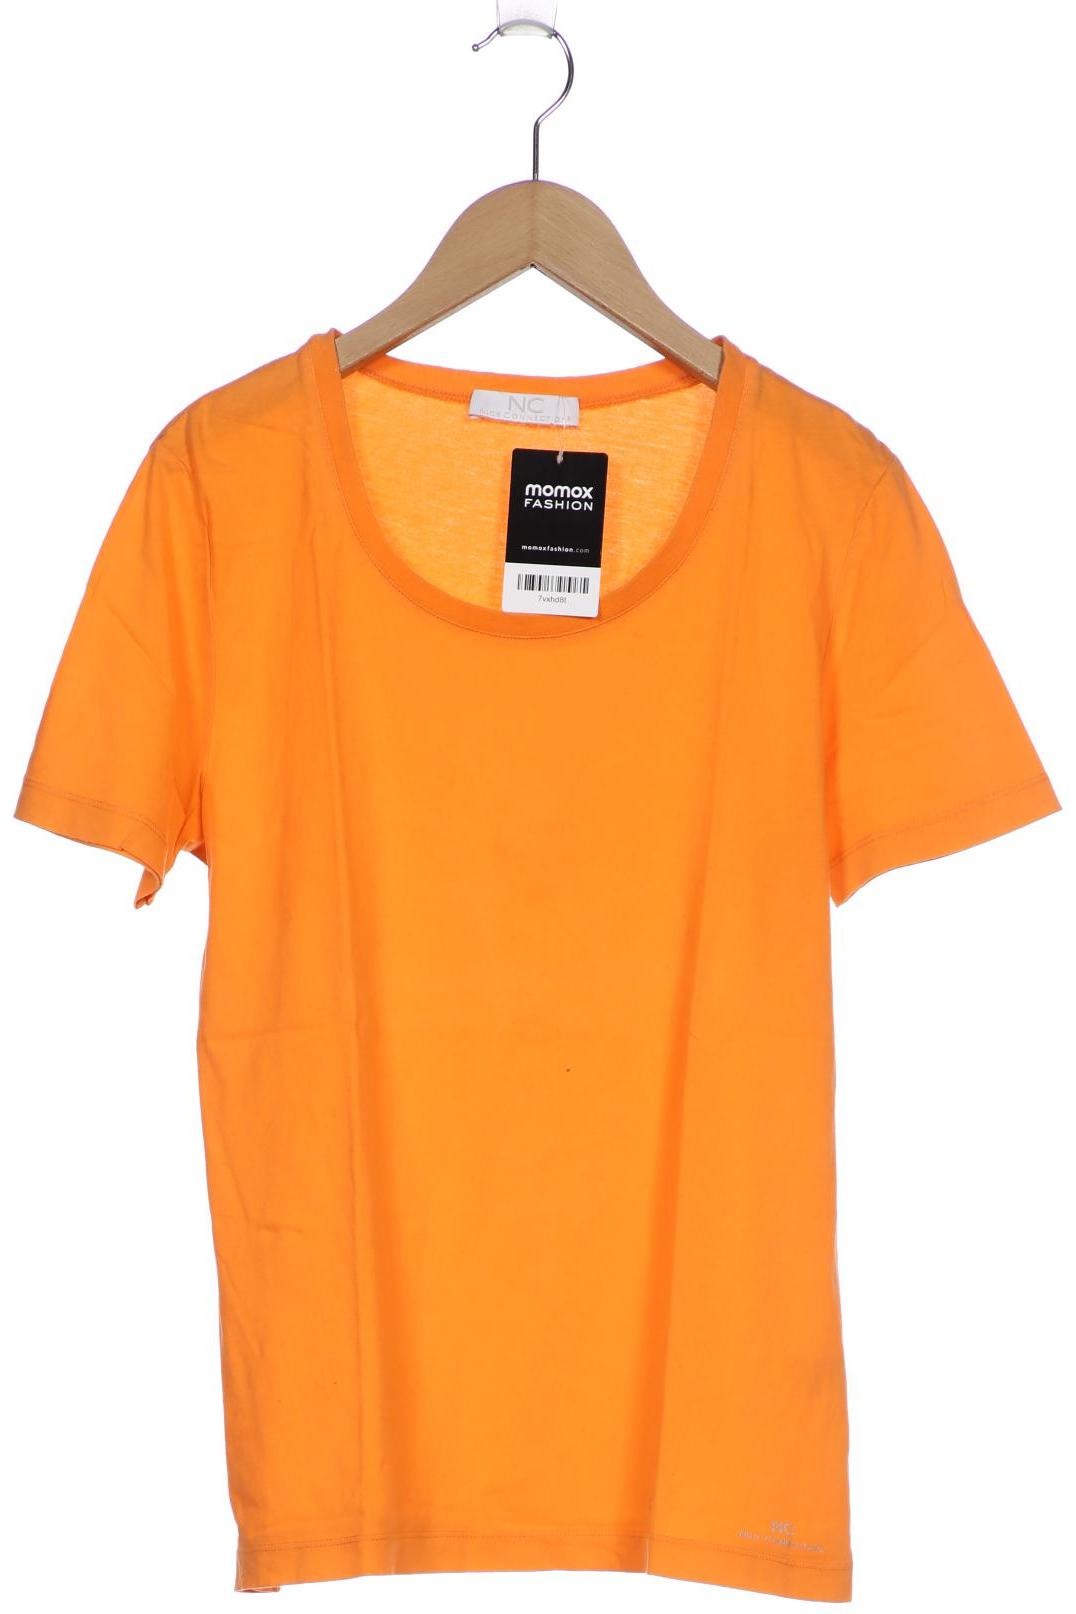 NICE CONNECTION Damen T-Shirt, orange von nice connection